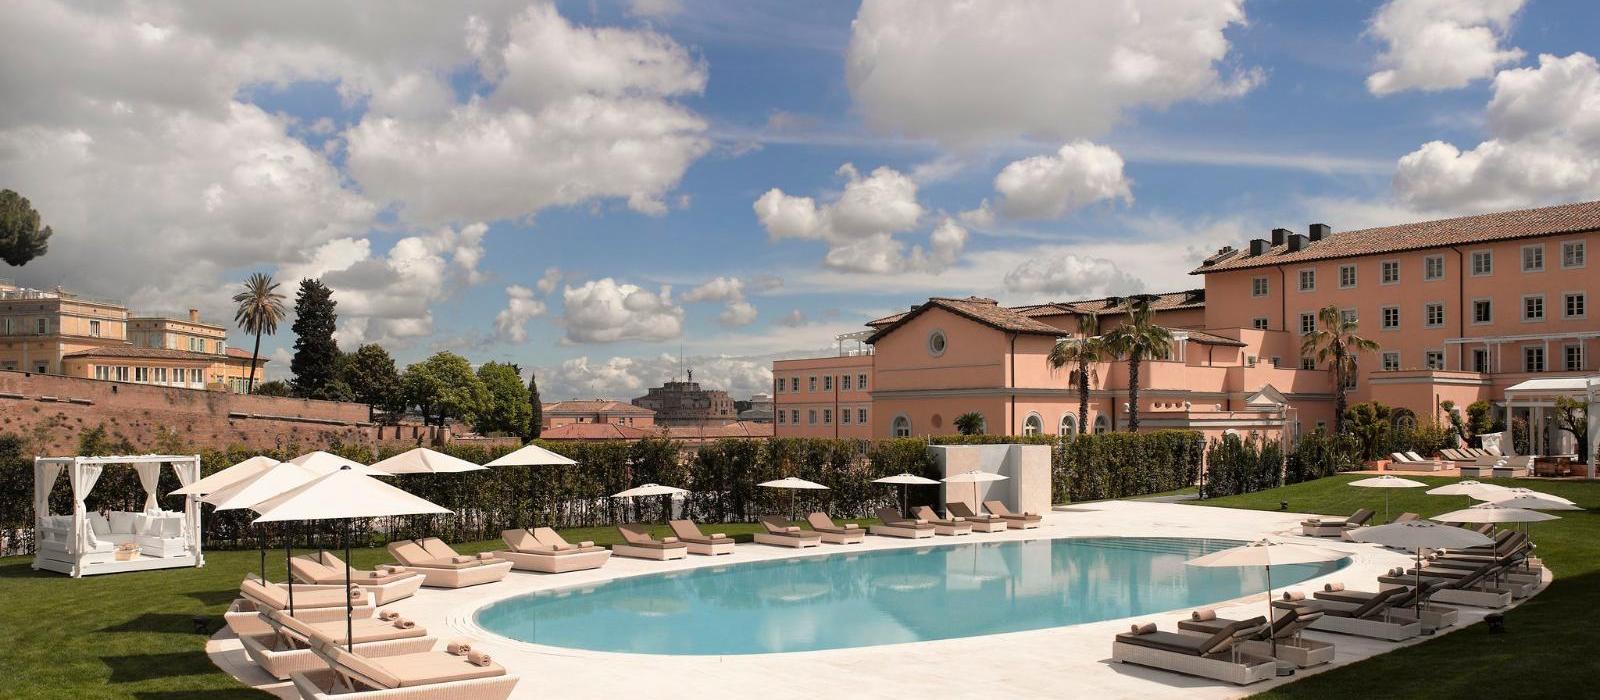 罗马盛美丽亚阿格丽娉娜皇后别墅酒店(Villa Agrippina, a Gran Melia Hotel) 图片  www.lhw.cn